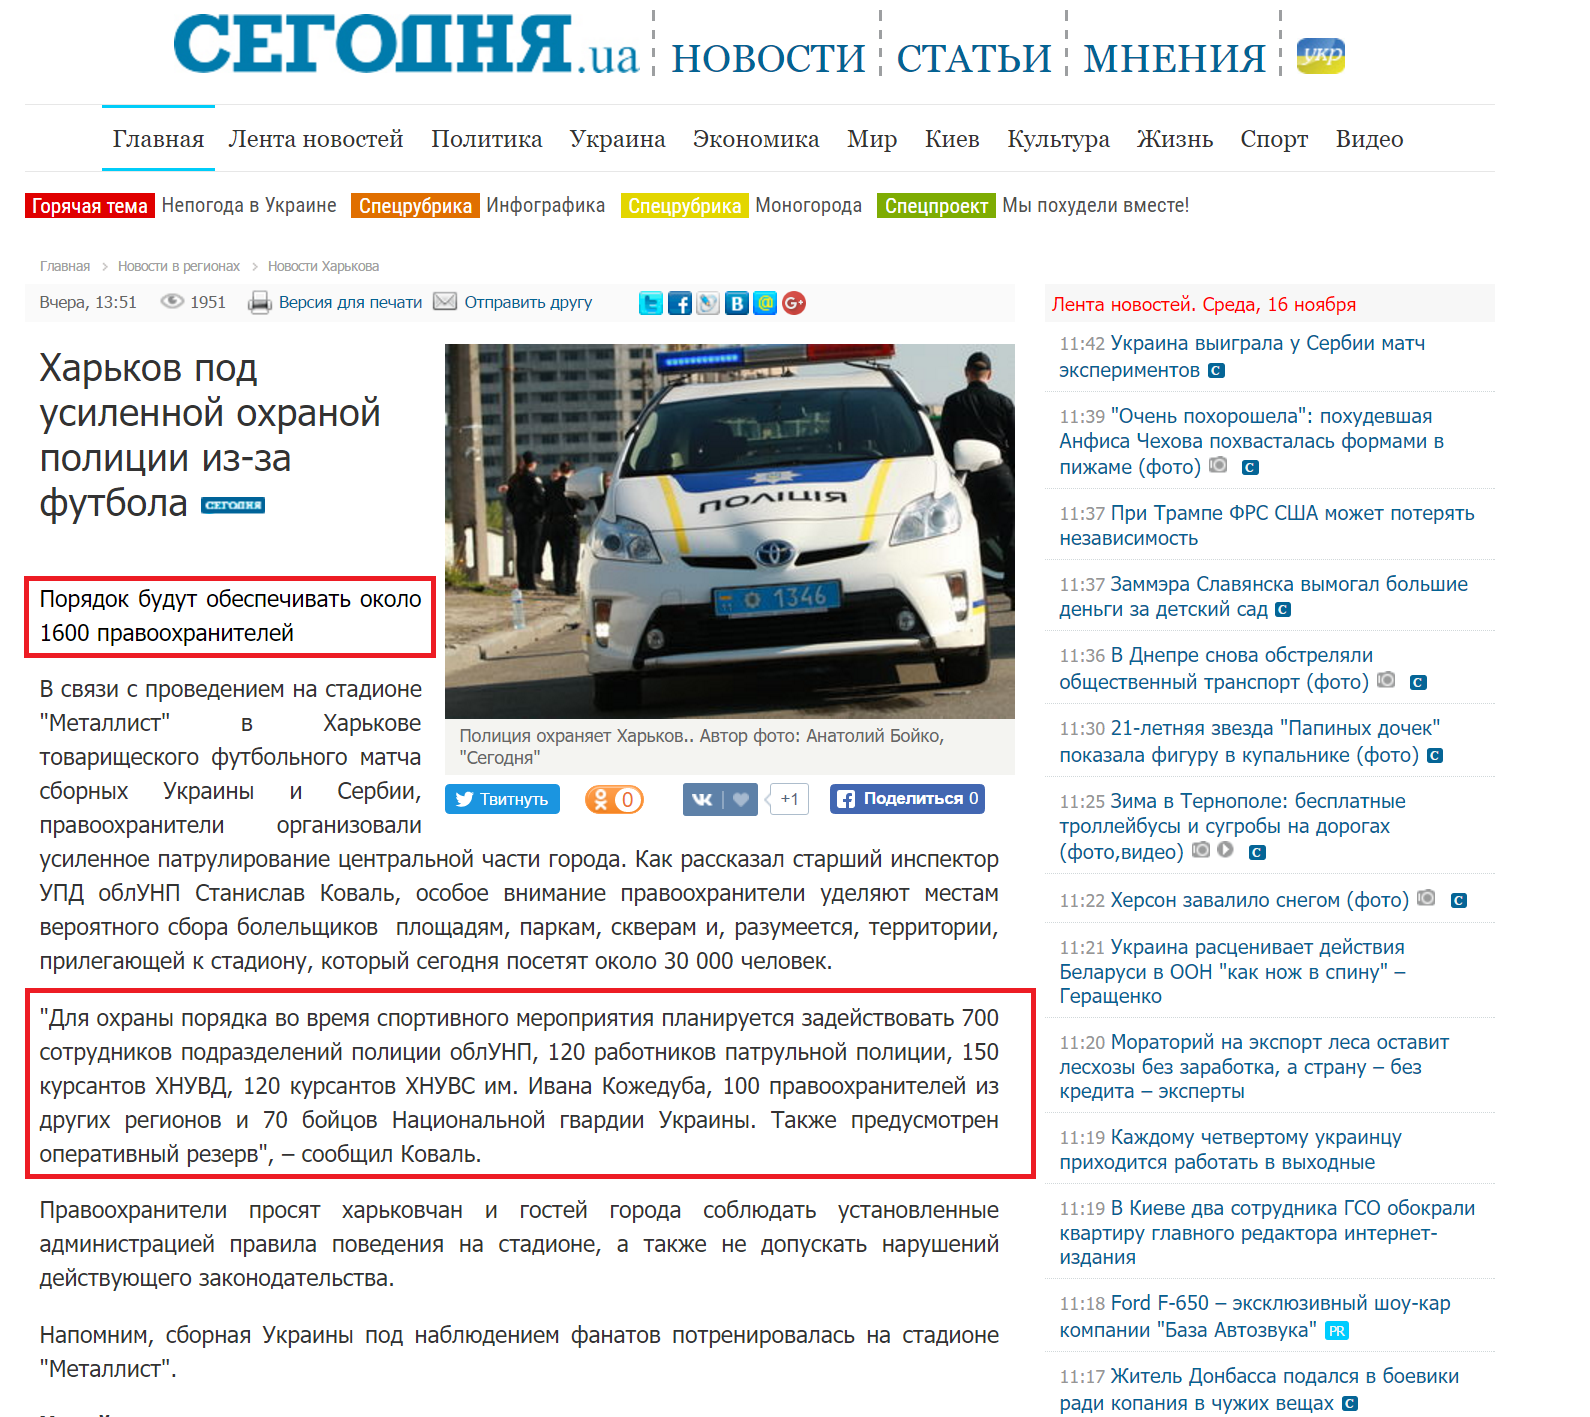 http://www.segodnya.ua/regions/kharkov/harkov-pod-usilennoy-ohranoy-policii-iz-za-futbola-770254.html